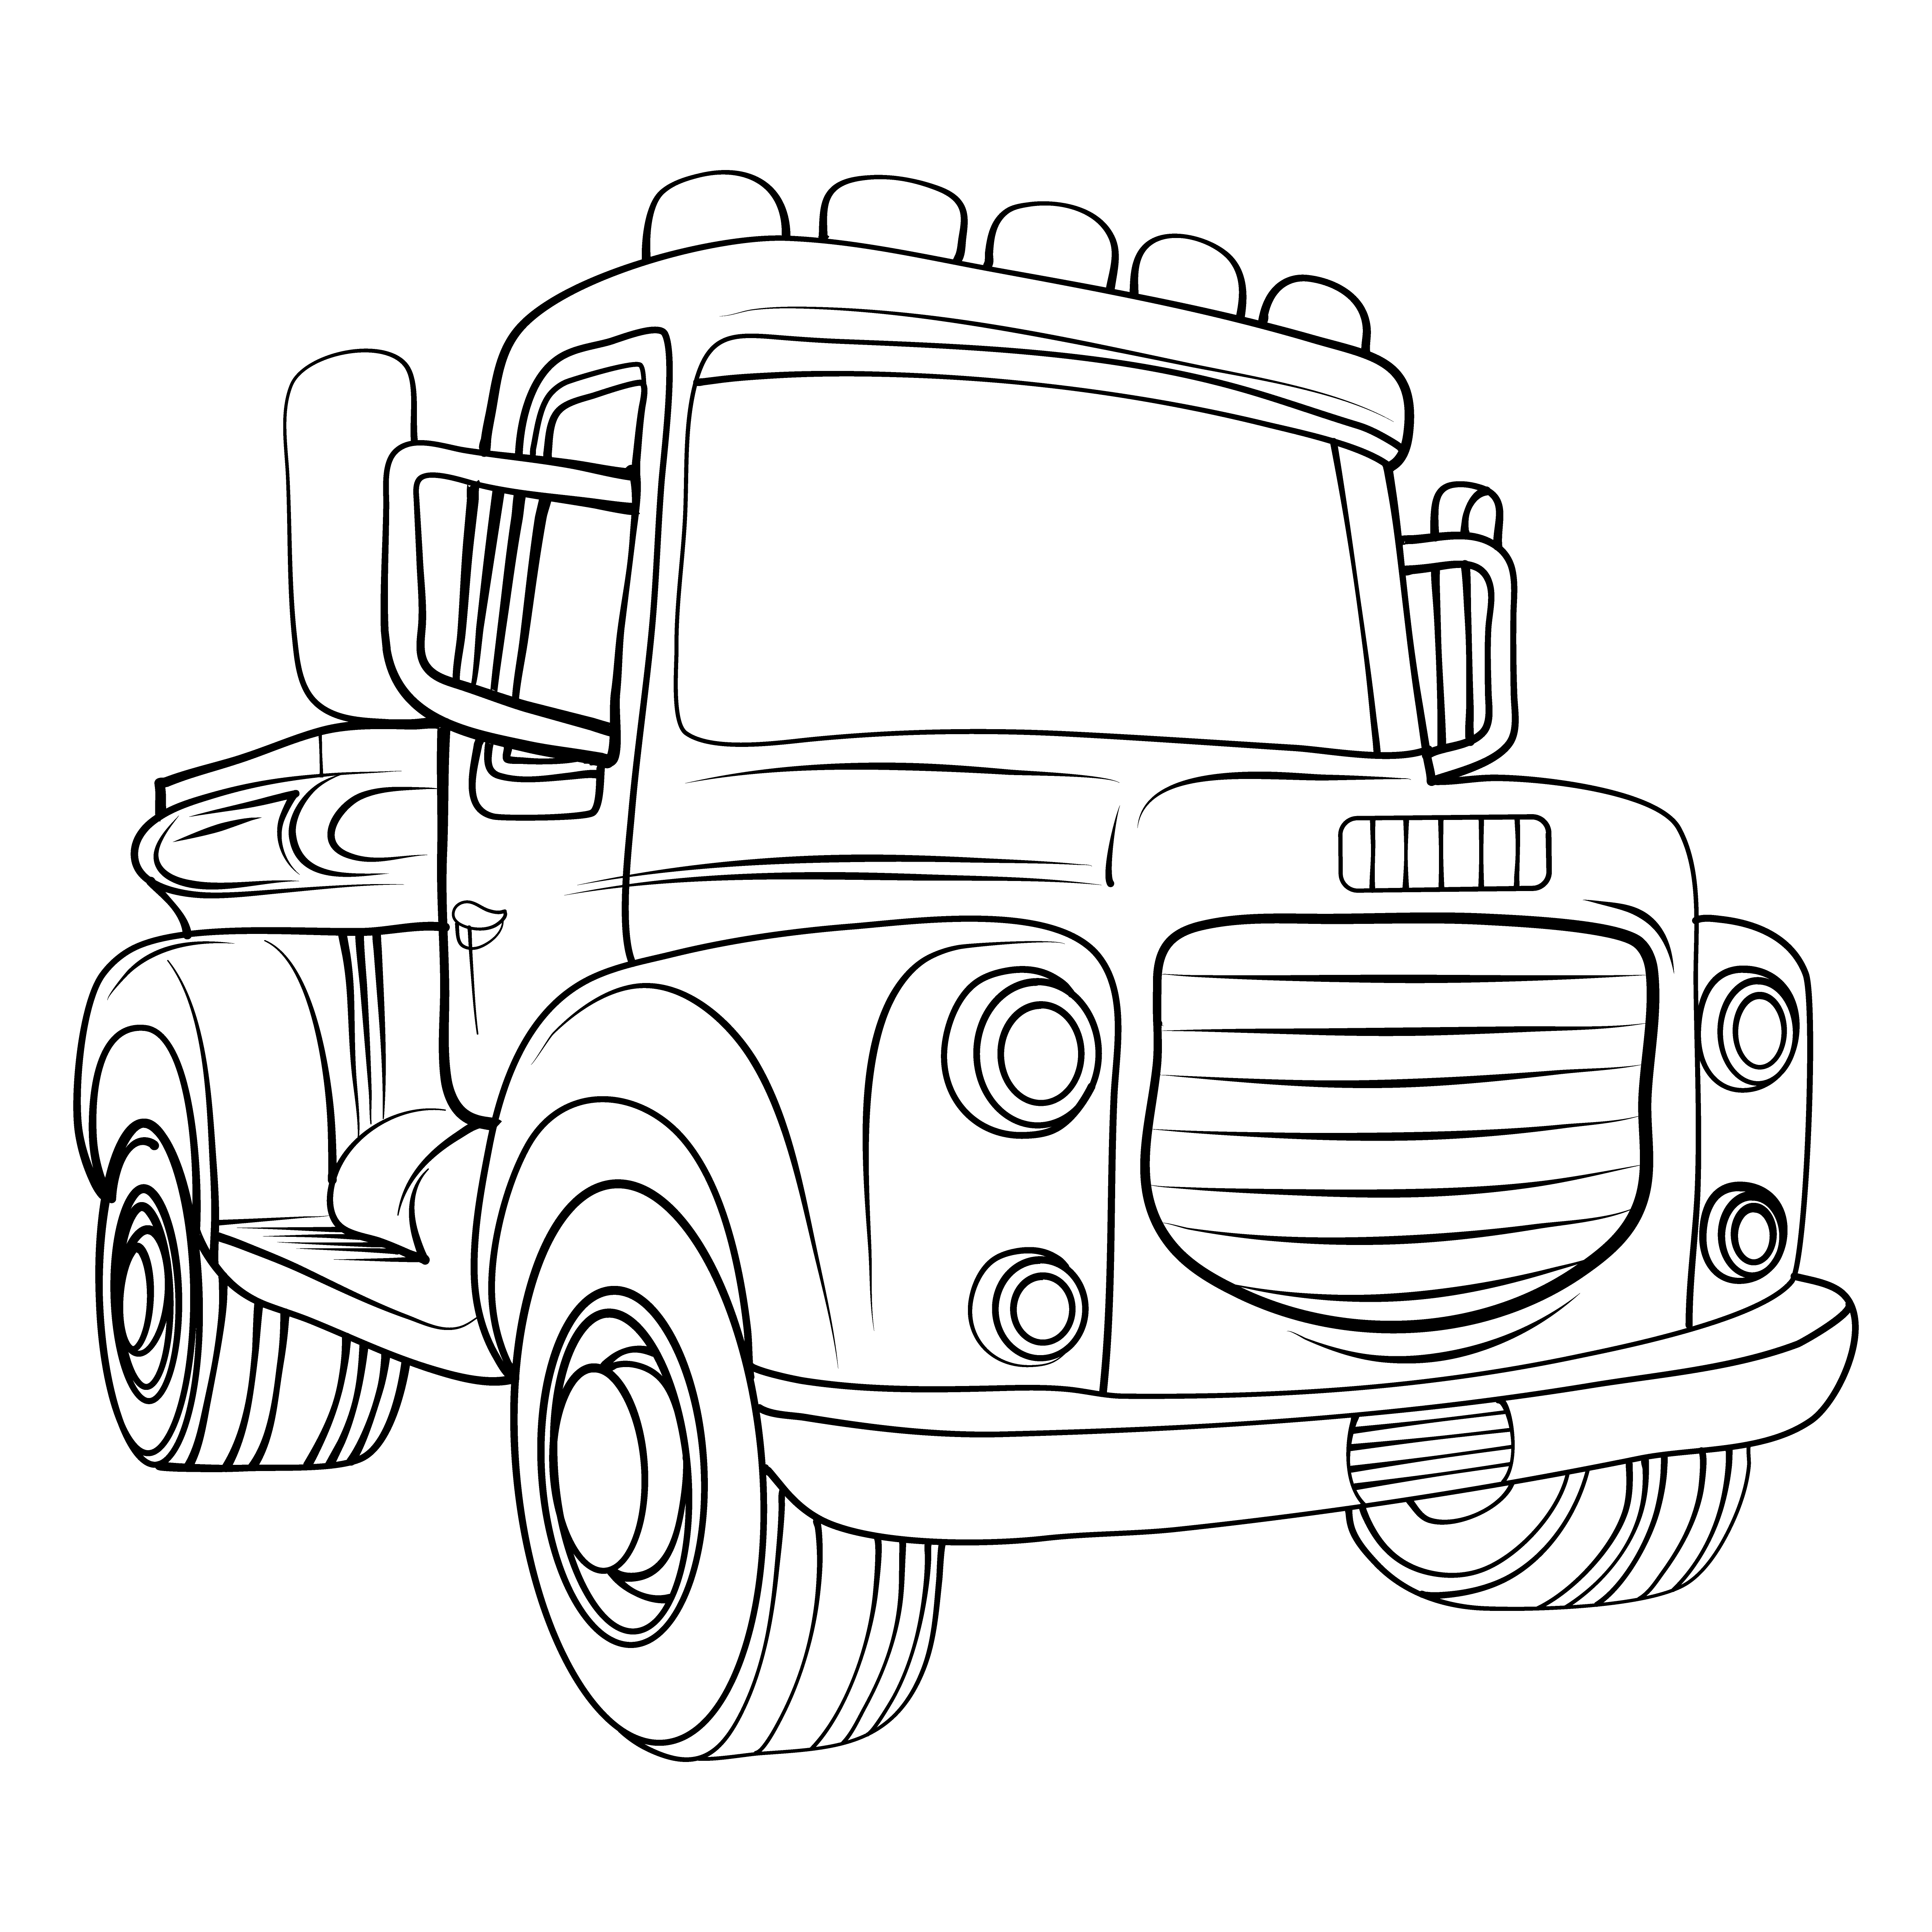 Раскраска грузовик с мигалками формата А4 в высоком качестве